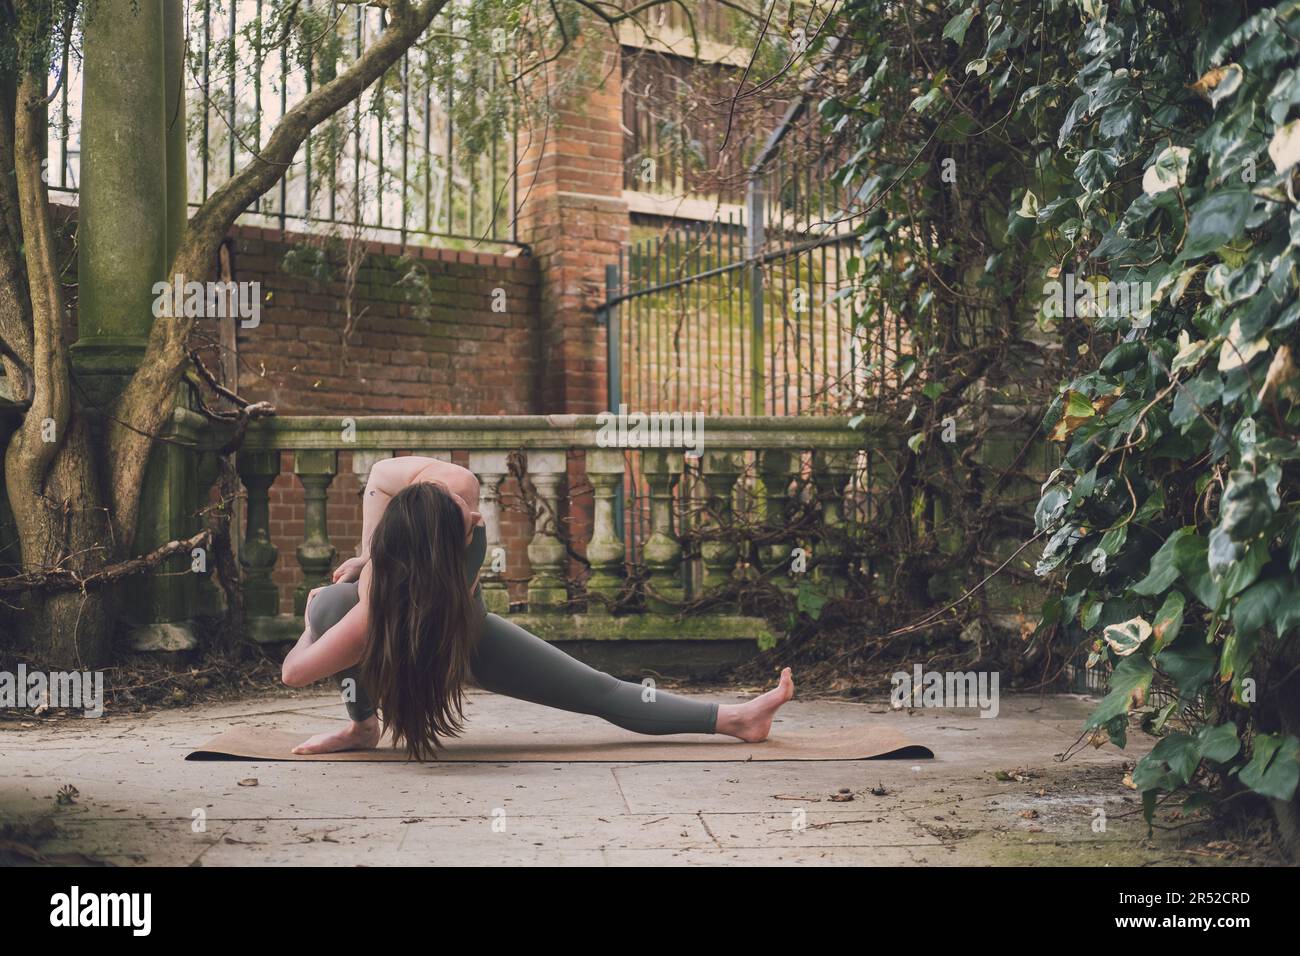 Une enseignante de yoga irlandaise pratiquant dans une fente latérale liée skandasana pose dans une terrasse d'un jardin historique à Hampstead Heath, Londres, dehors Banque D'Images